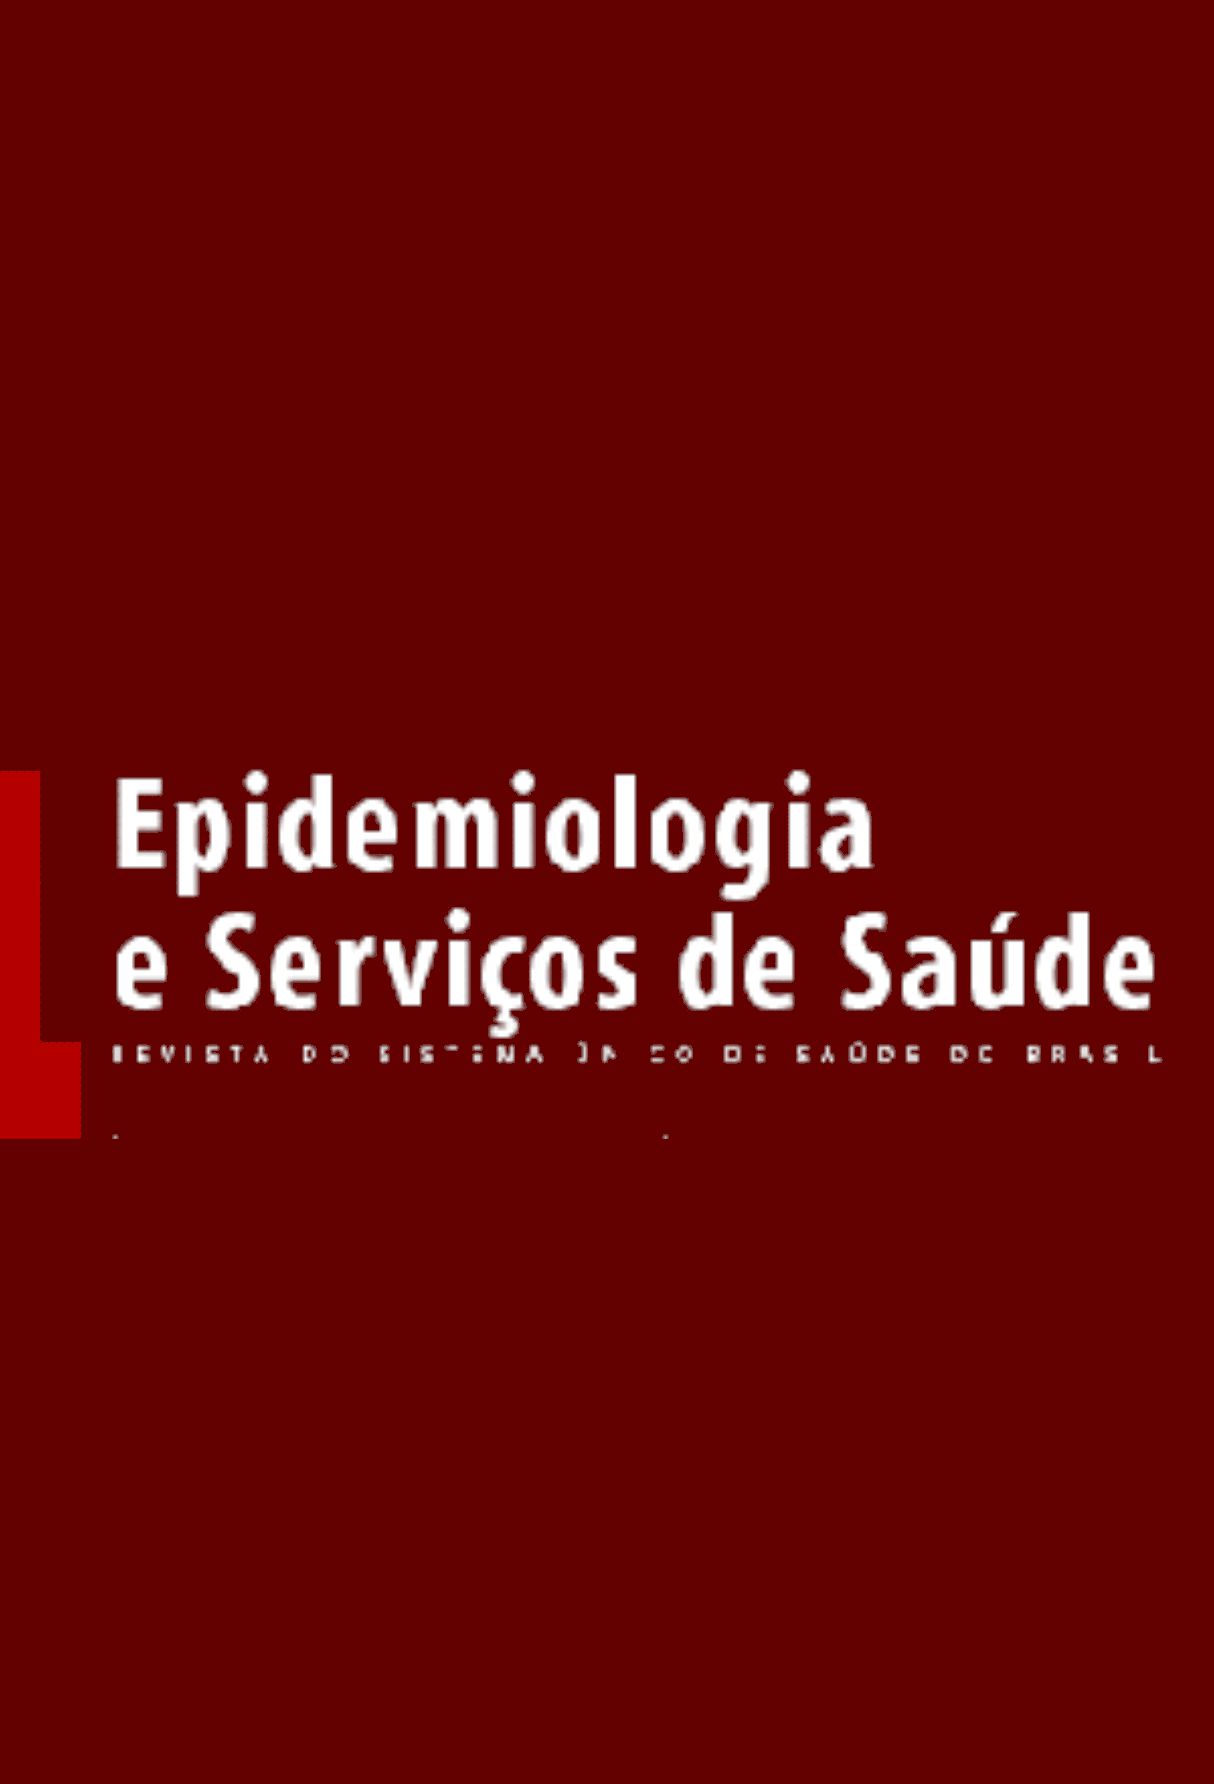 Capa: Epidemiologia e Serviços de Saúde